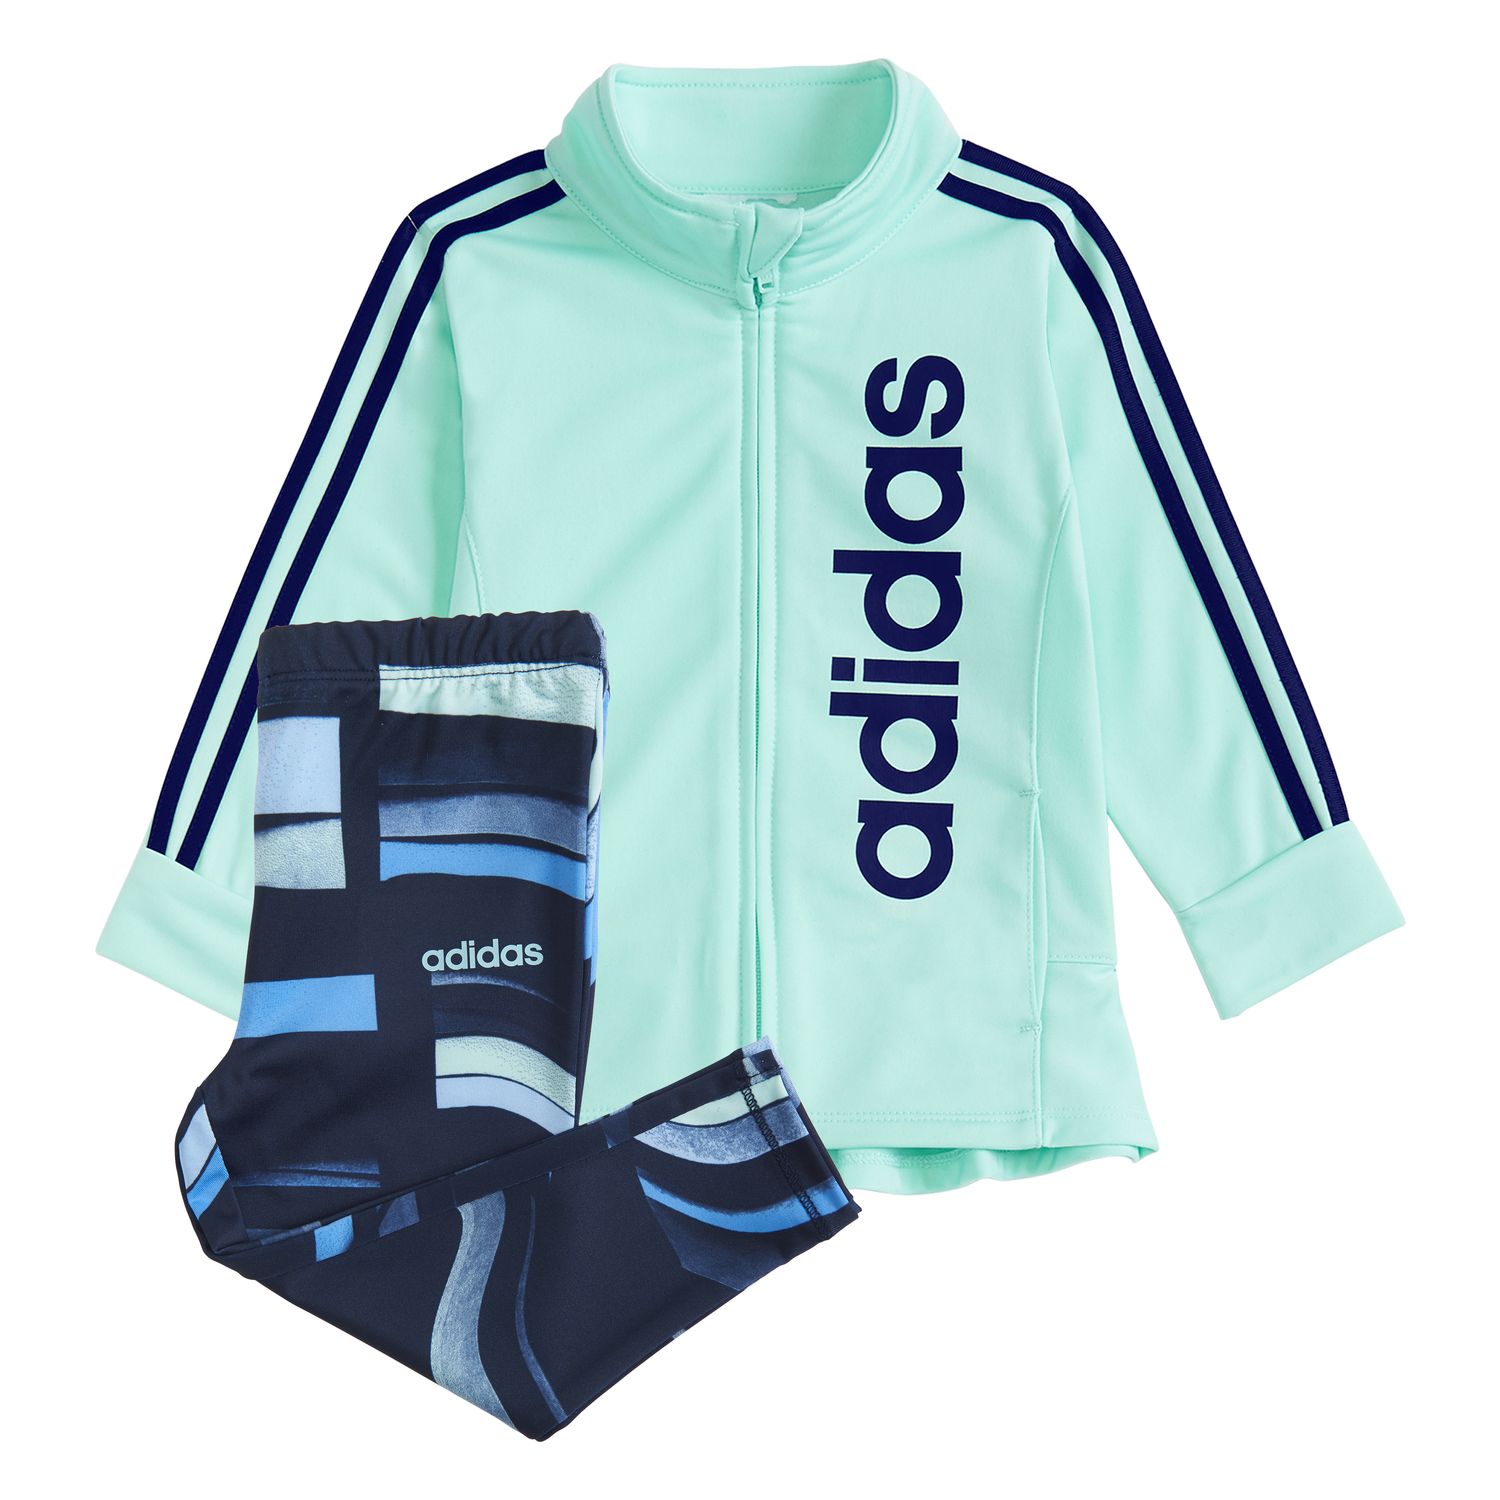 adidas leggings and jacket set